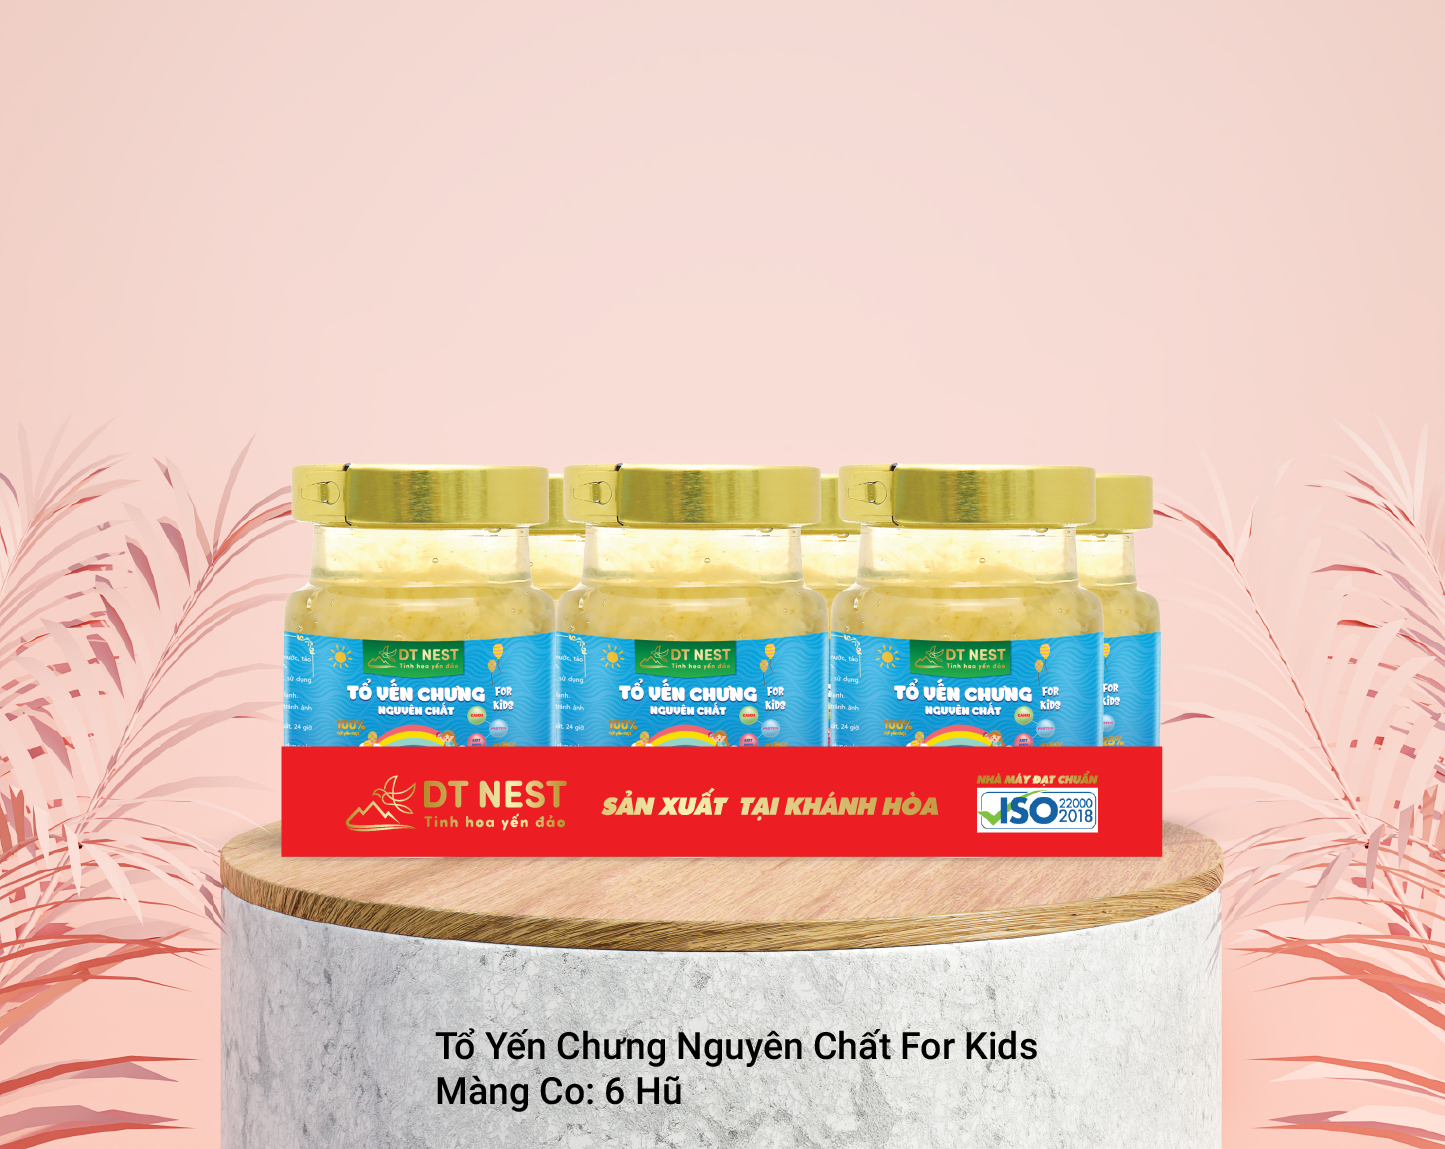 Đặc sản Khánh Hòa -  Khay màng co yến chưng dành cho trẻ em DT NEST/ DT FOOD - OCOP 4 SAO